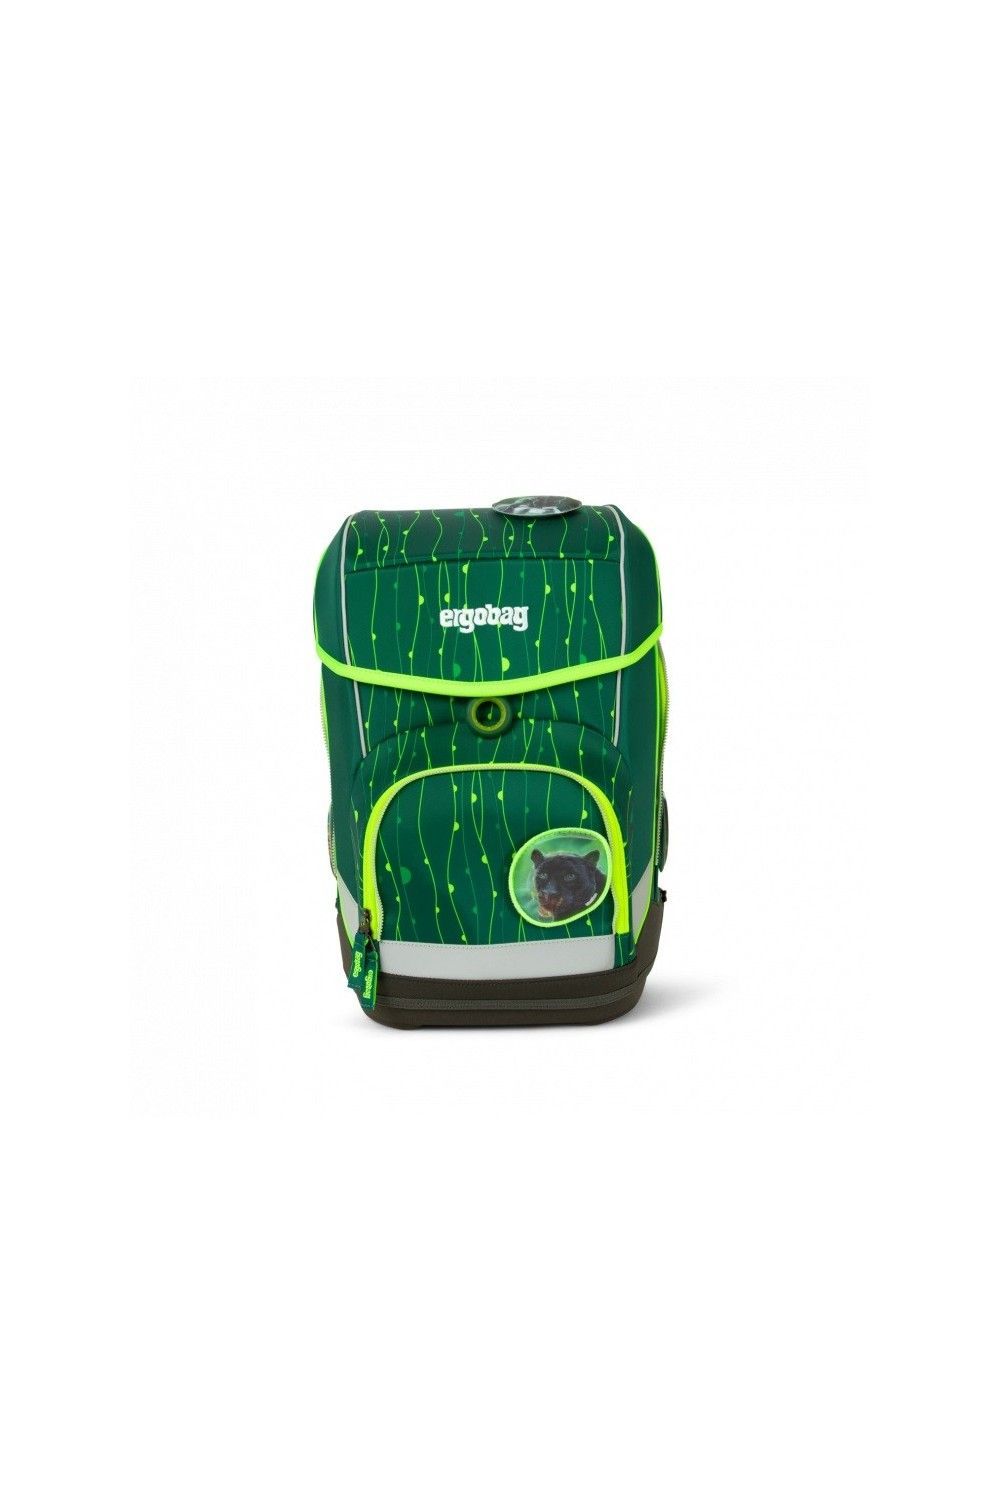 ergobag cubo school backpack set 5 pieces Lumi Edition RambazamBaer